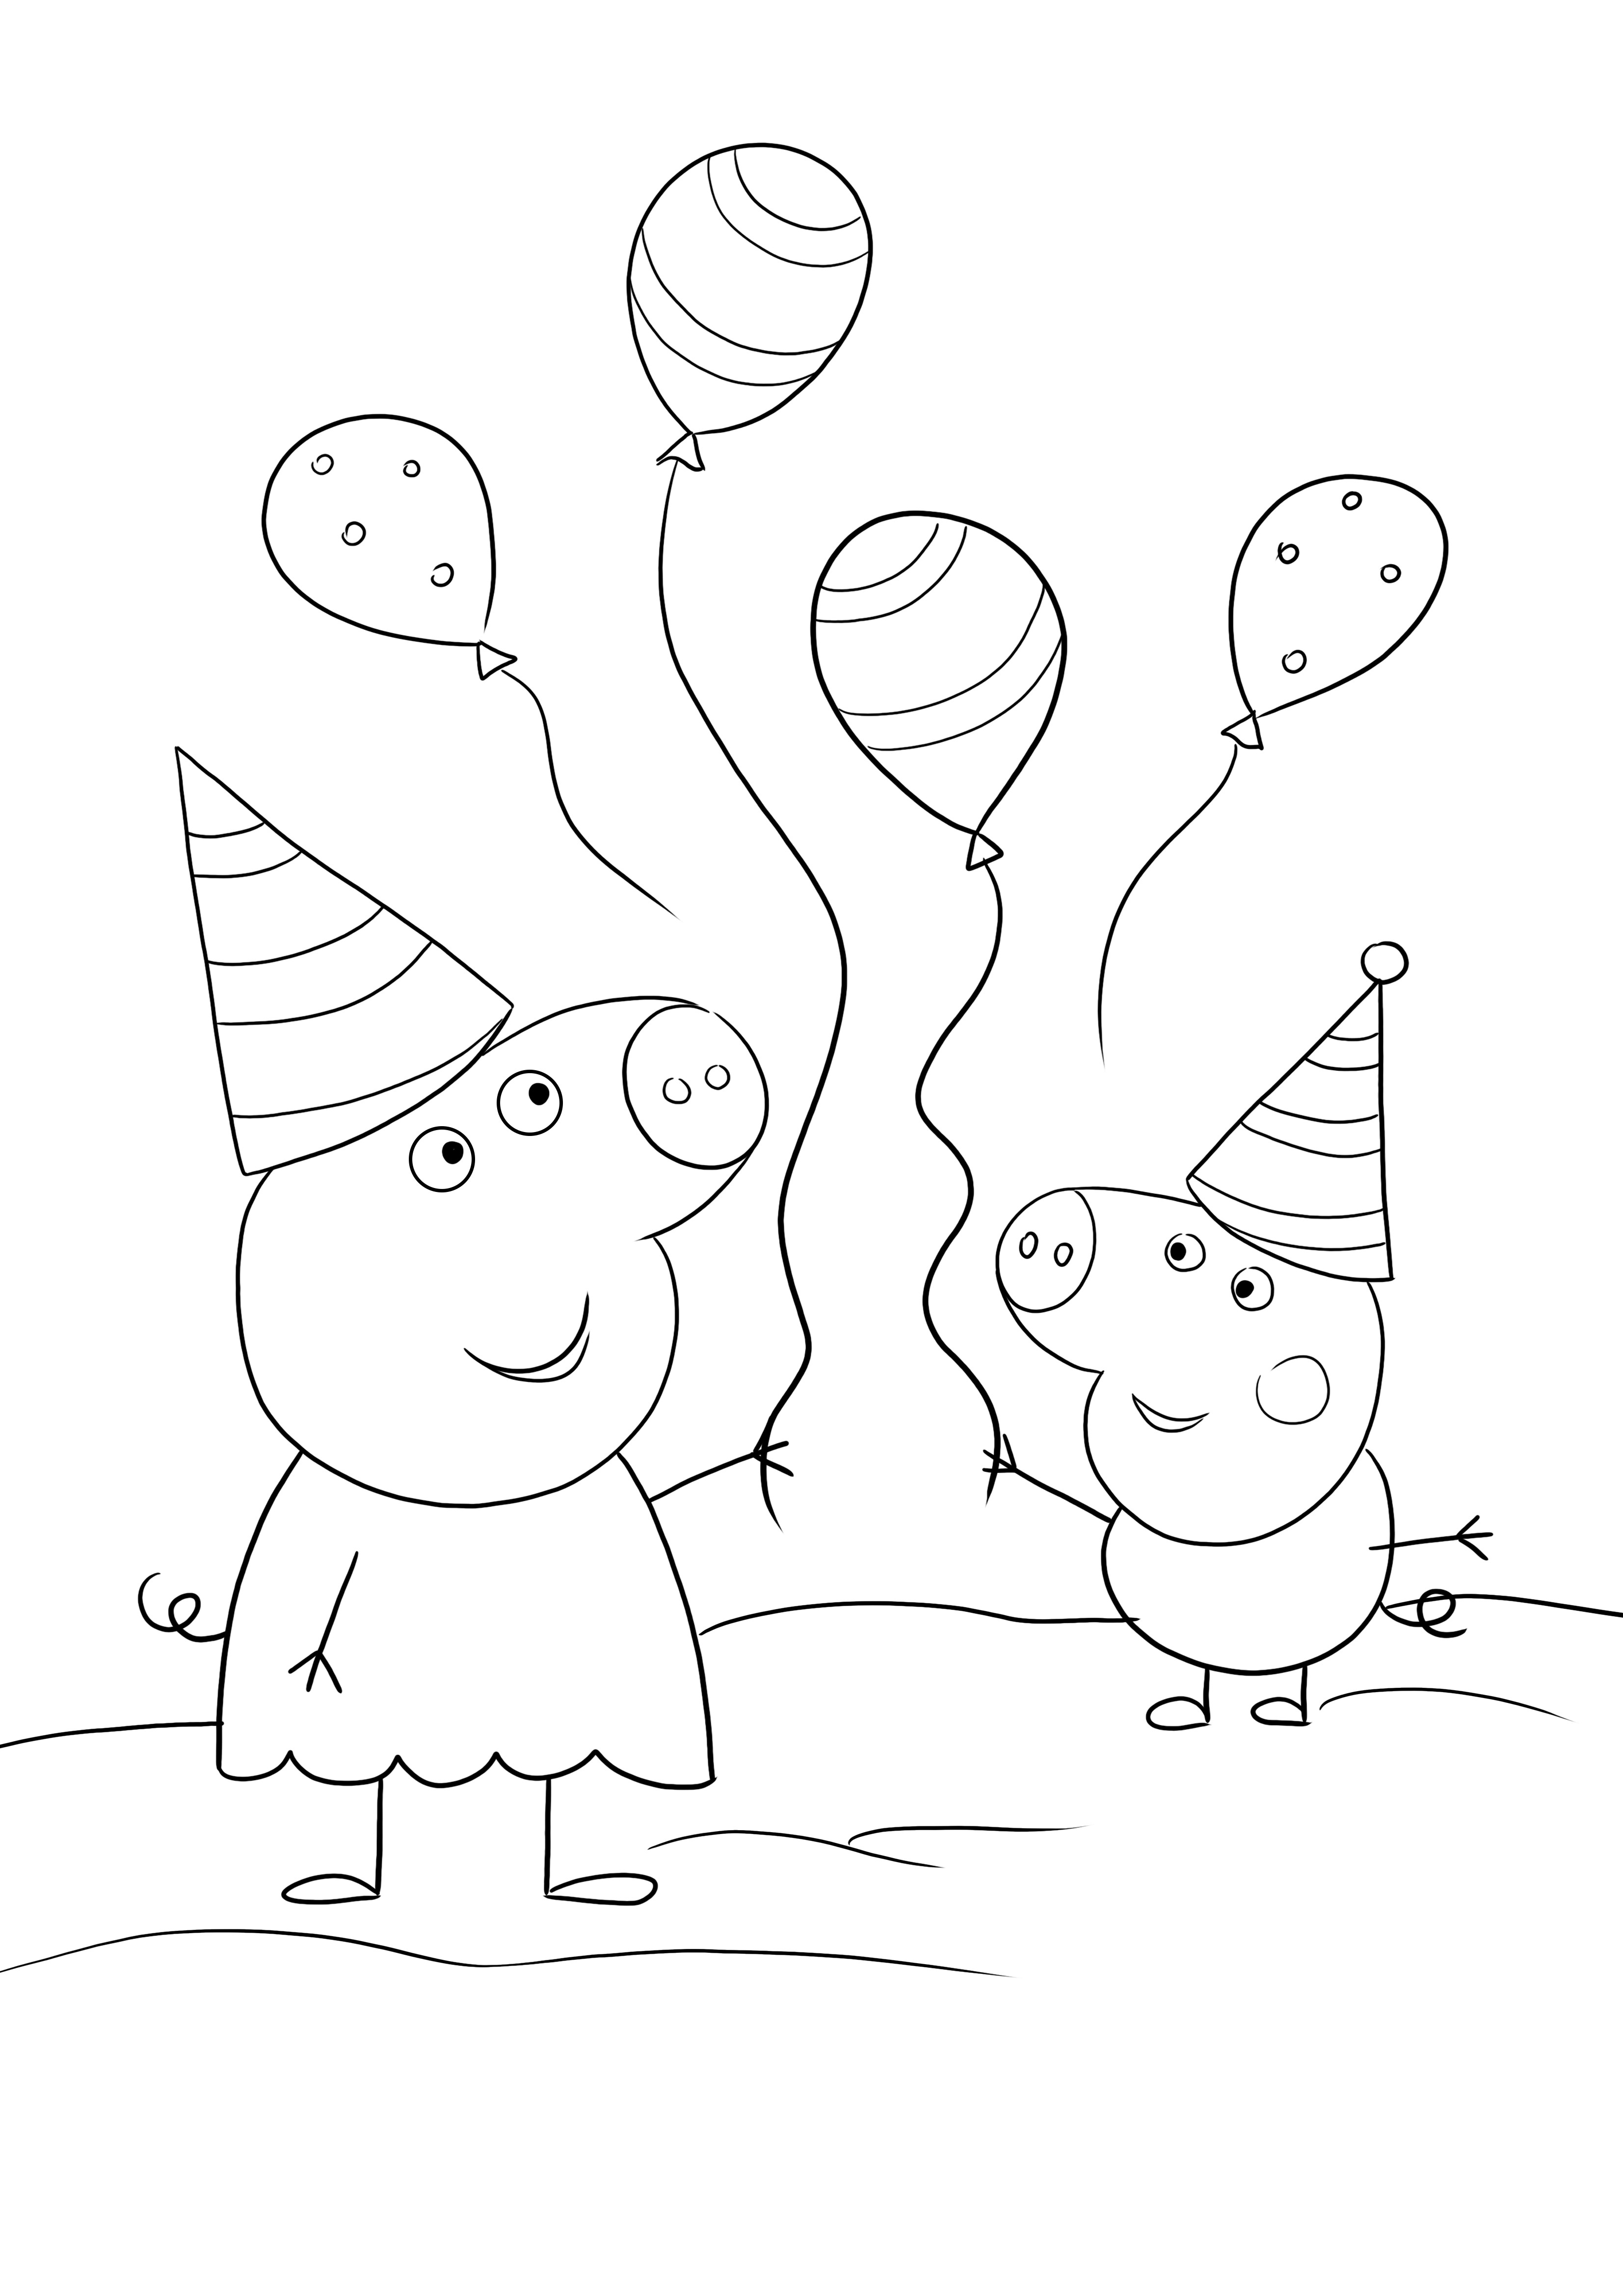 Peppa e George indo para uma festa de aniversário - uma página para colorir divertida e gratuita para imprimir e colorir